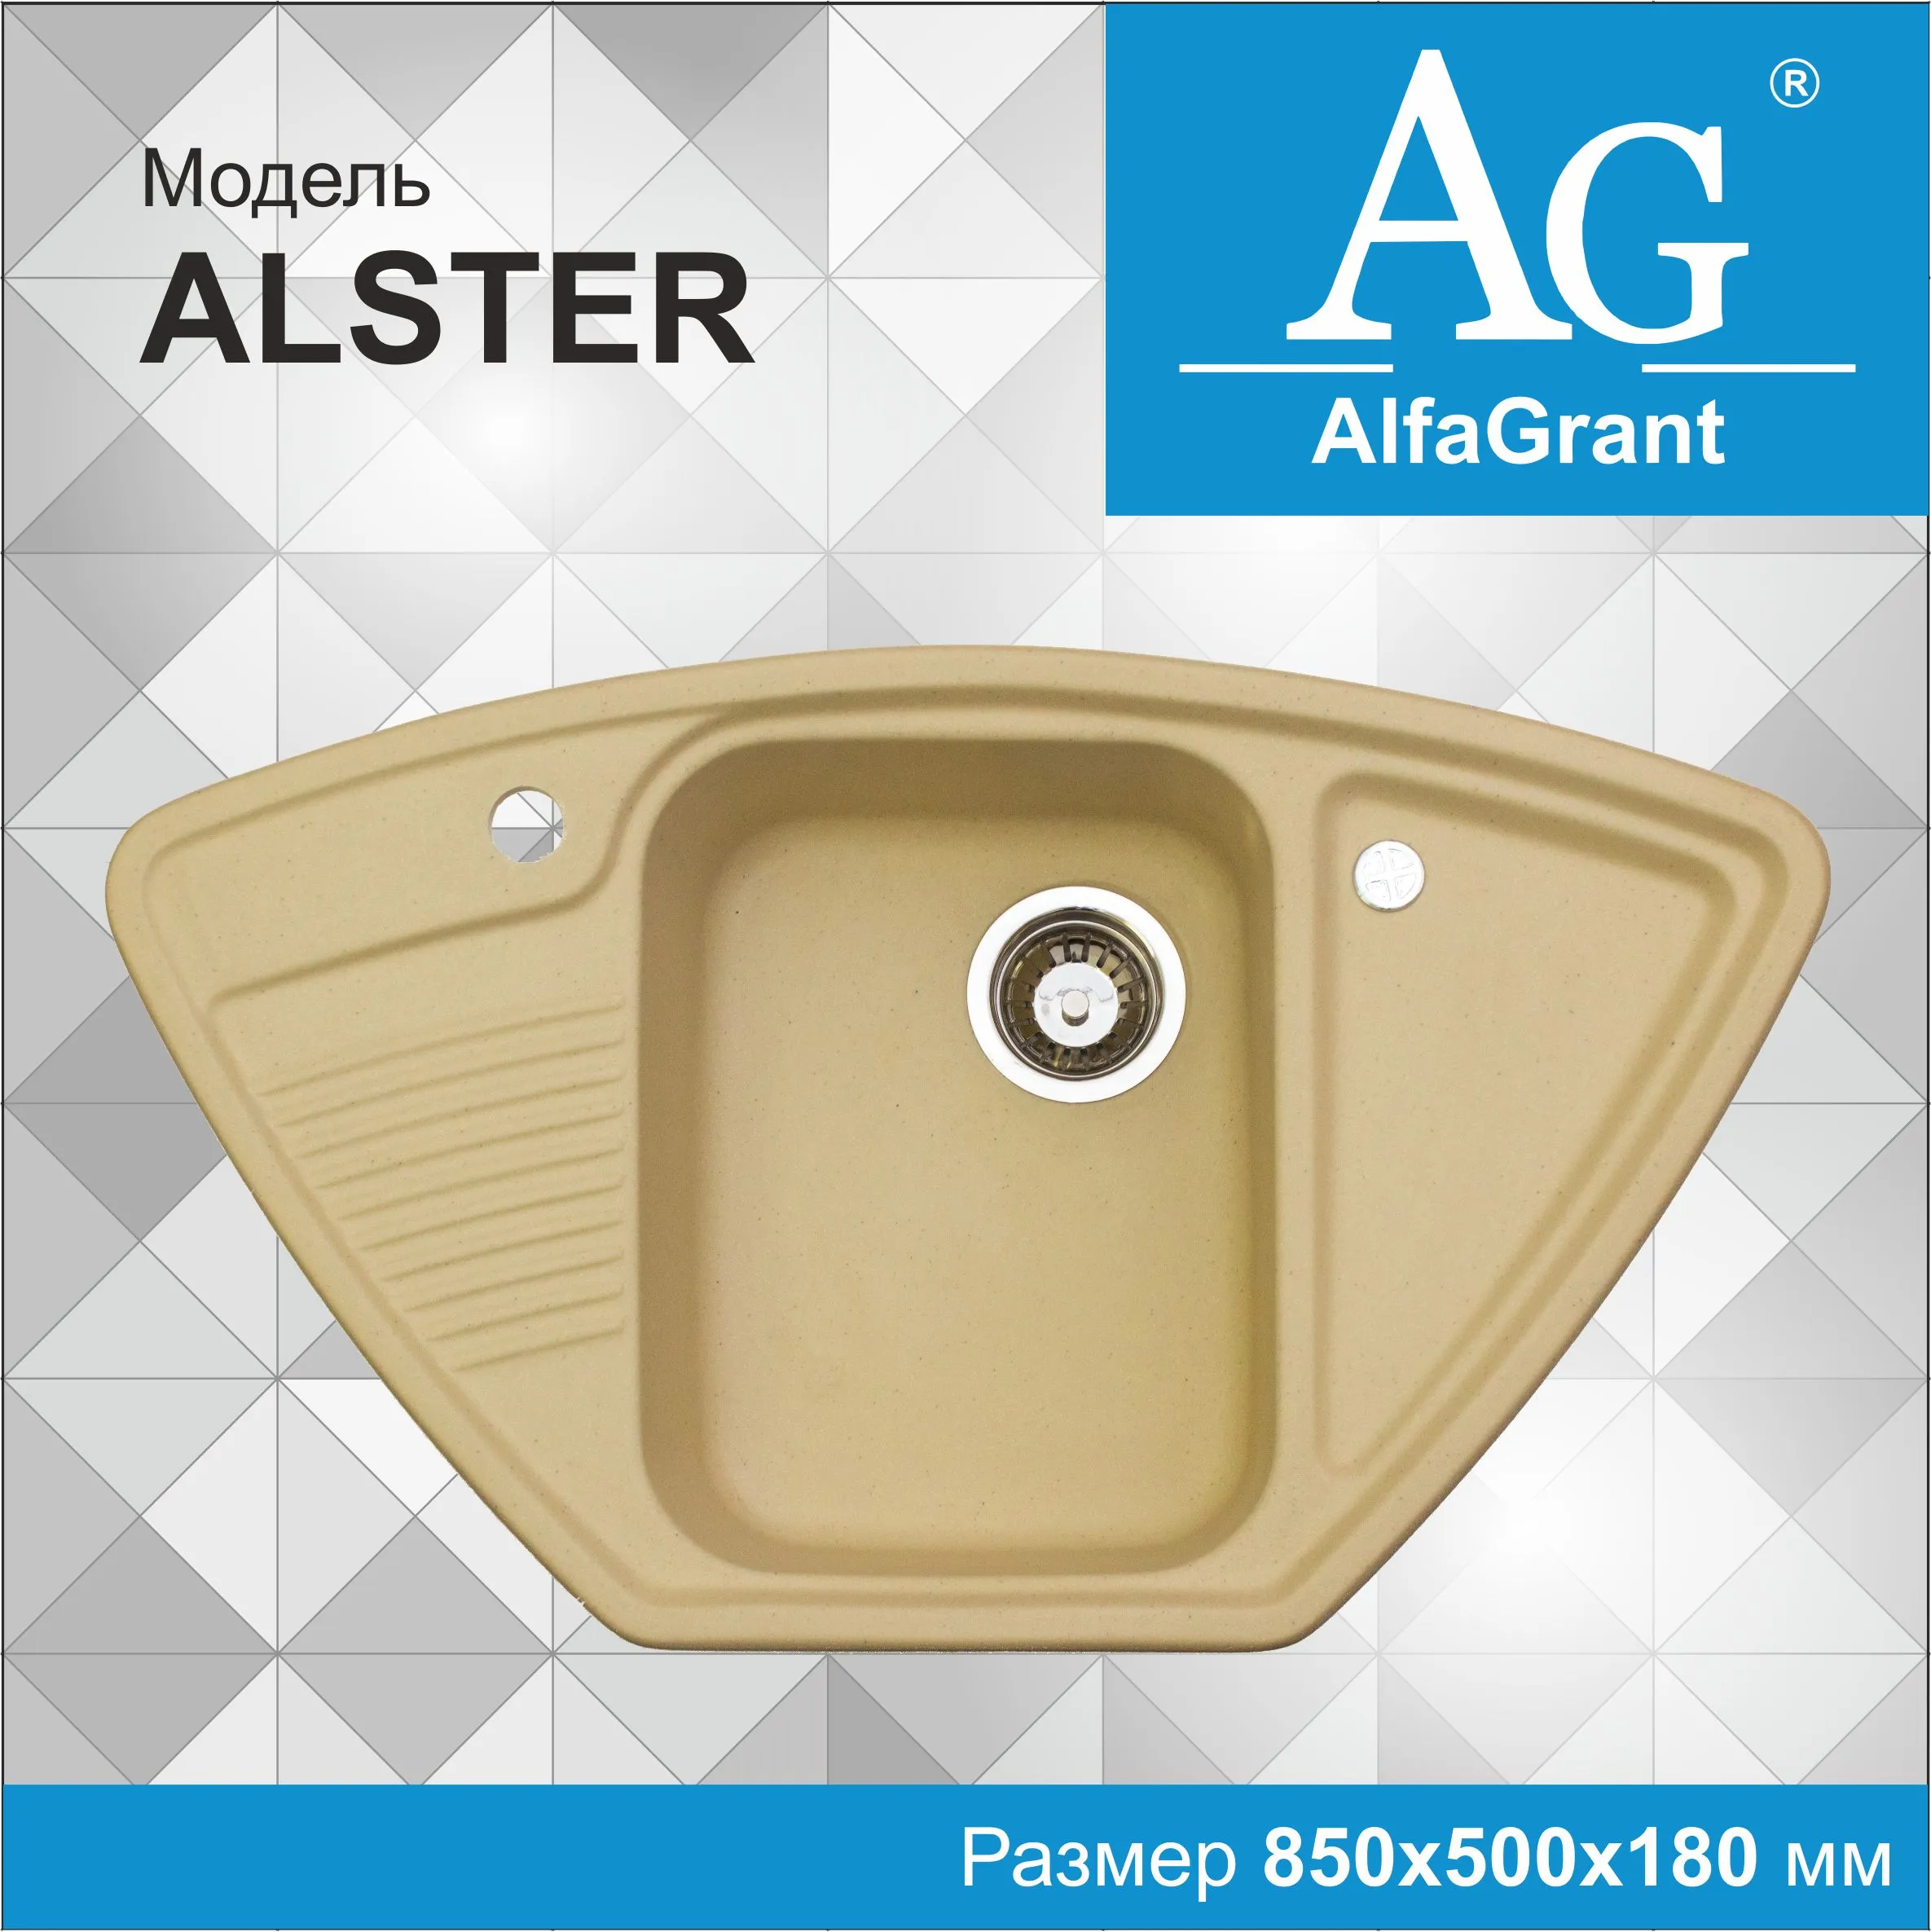 Кухонная мойка AlfaGrant модель ALSTER (AG-010)#1